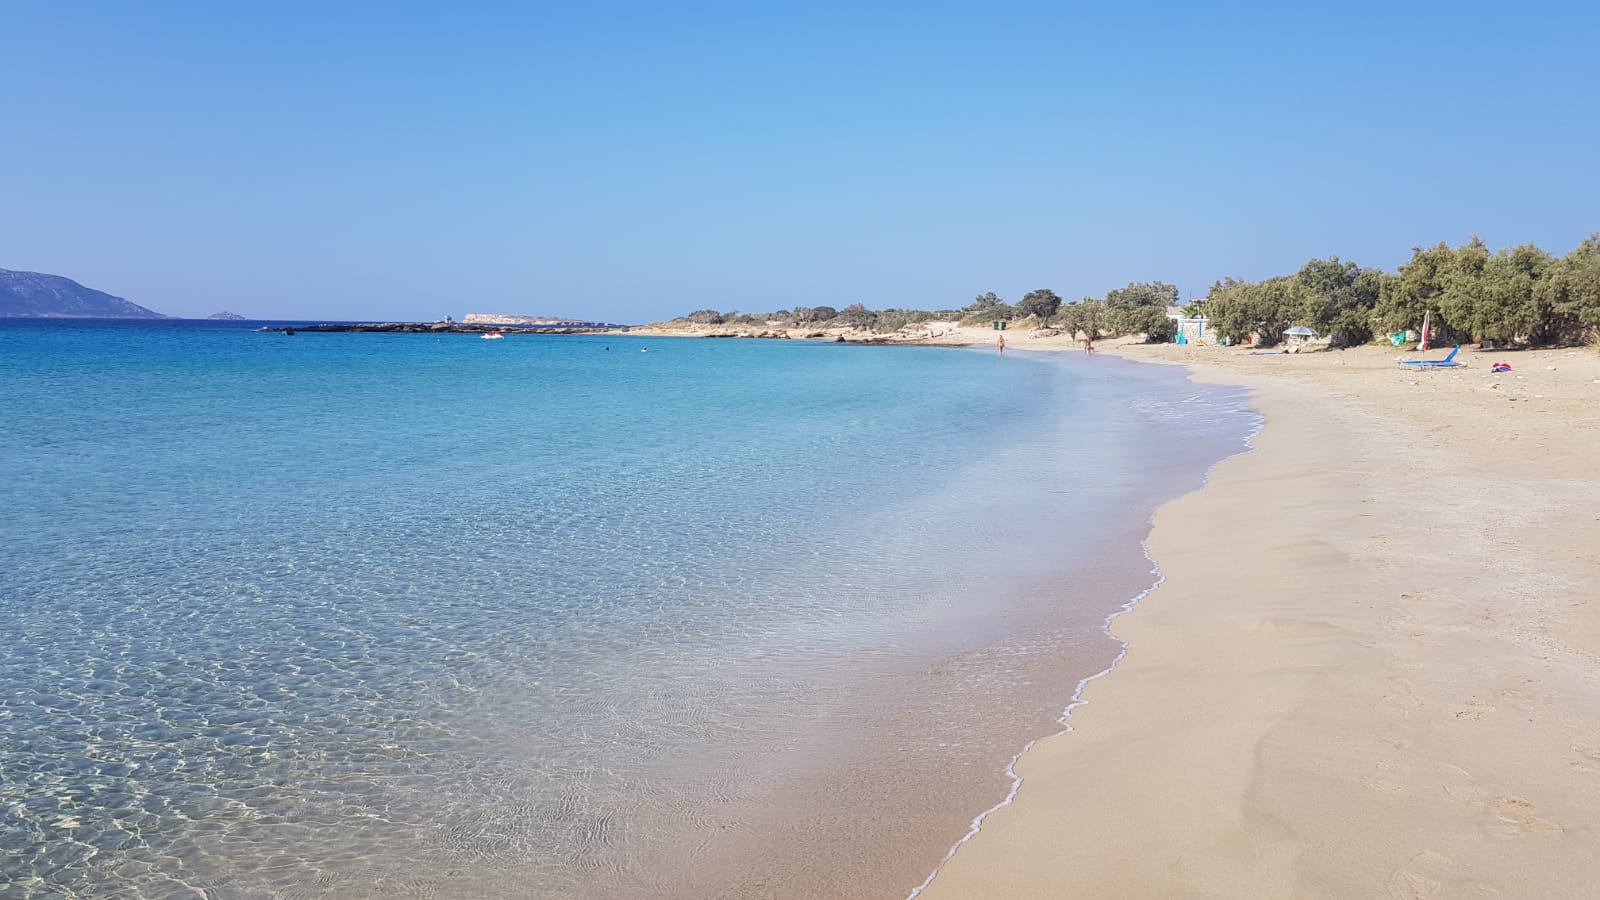 Zdjęcie Fanos beach z powierzchnią jasny piasek